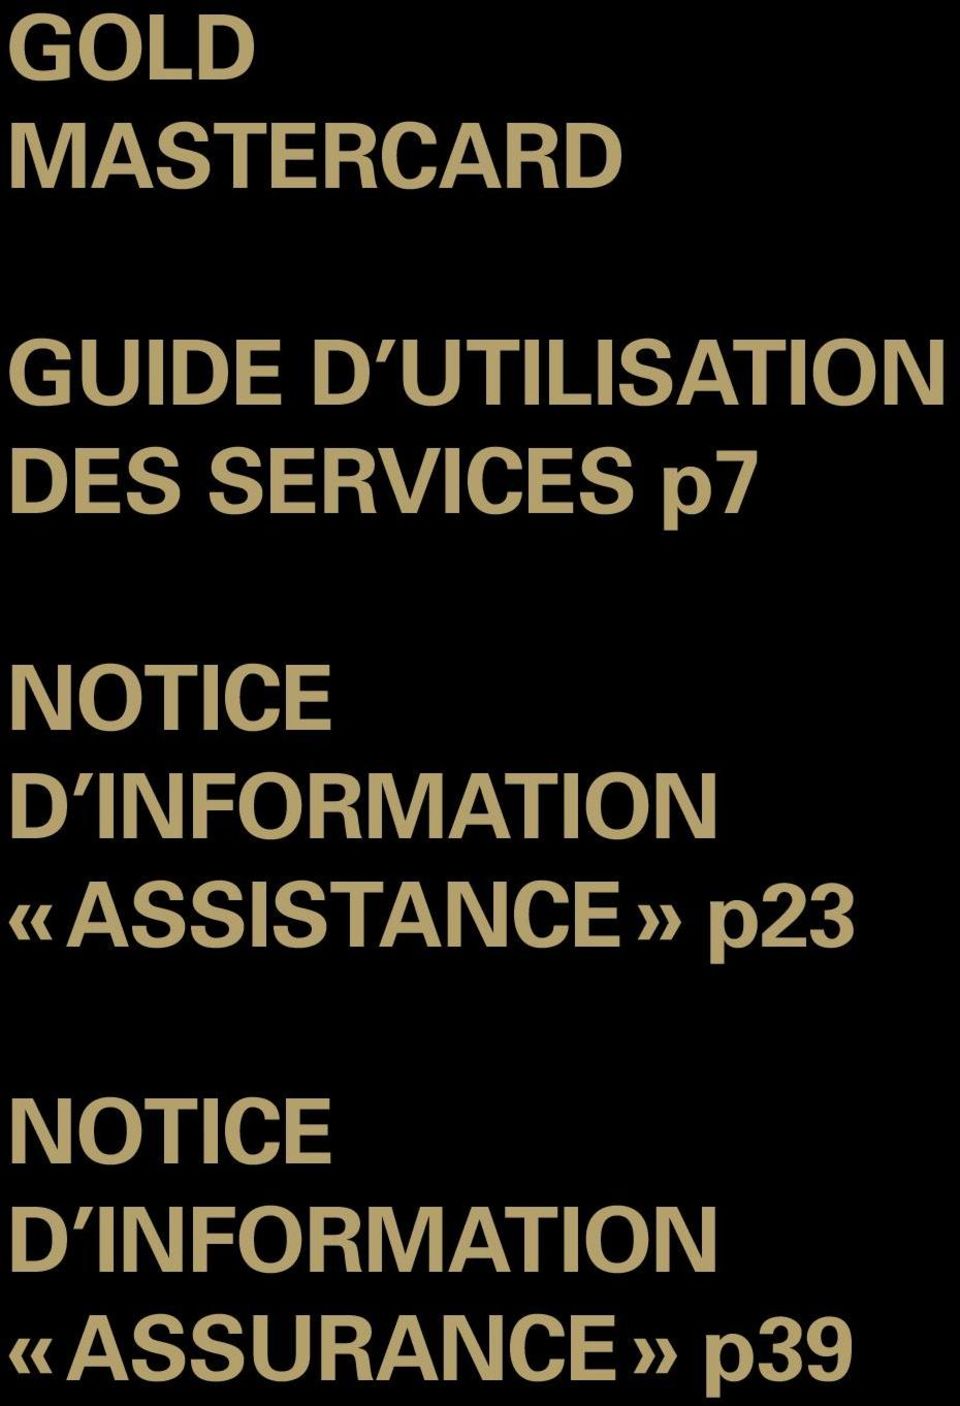 d information «Assistance» p23